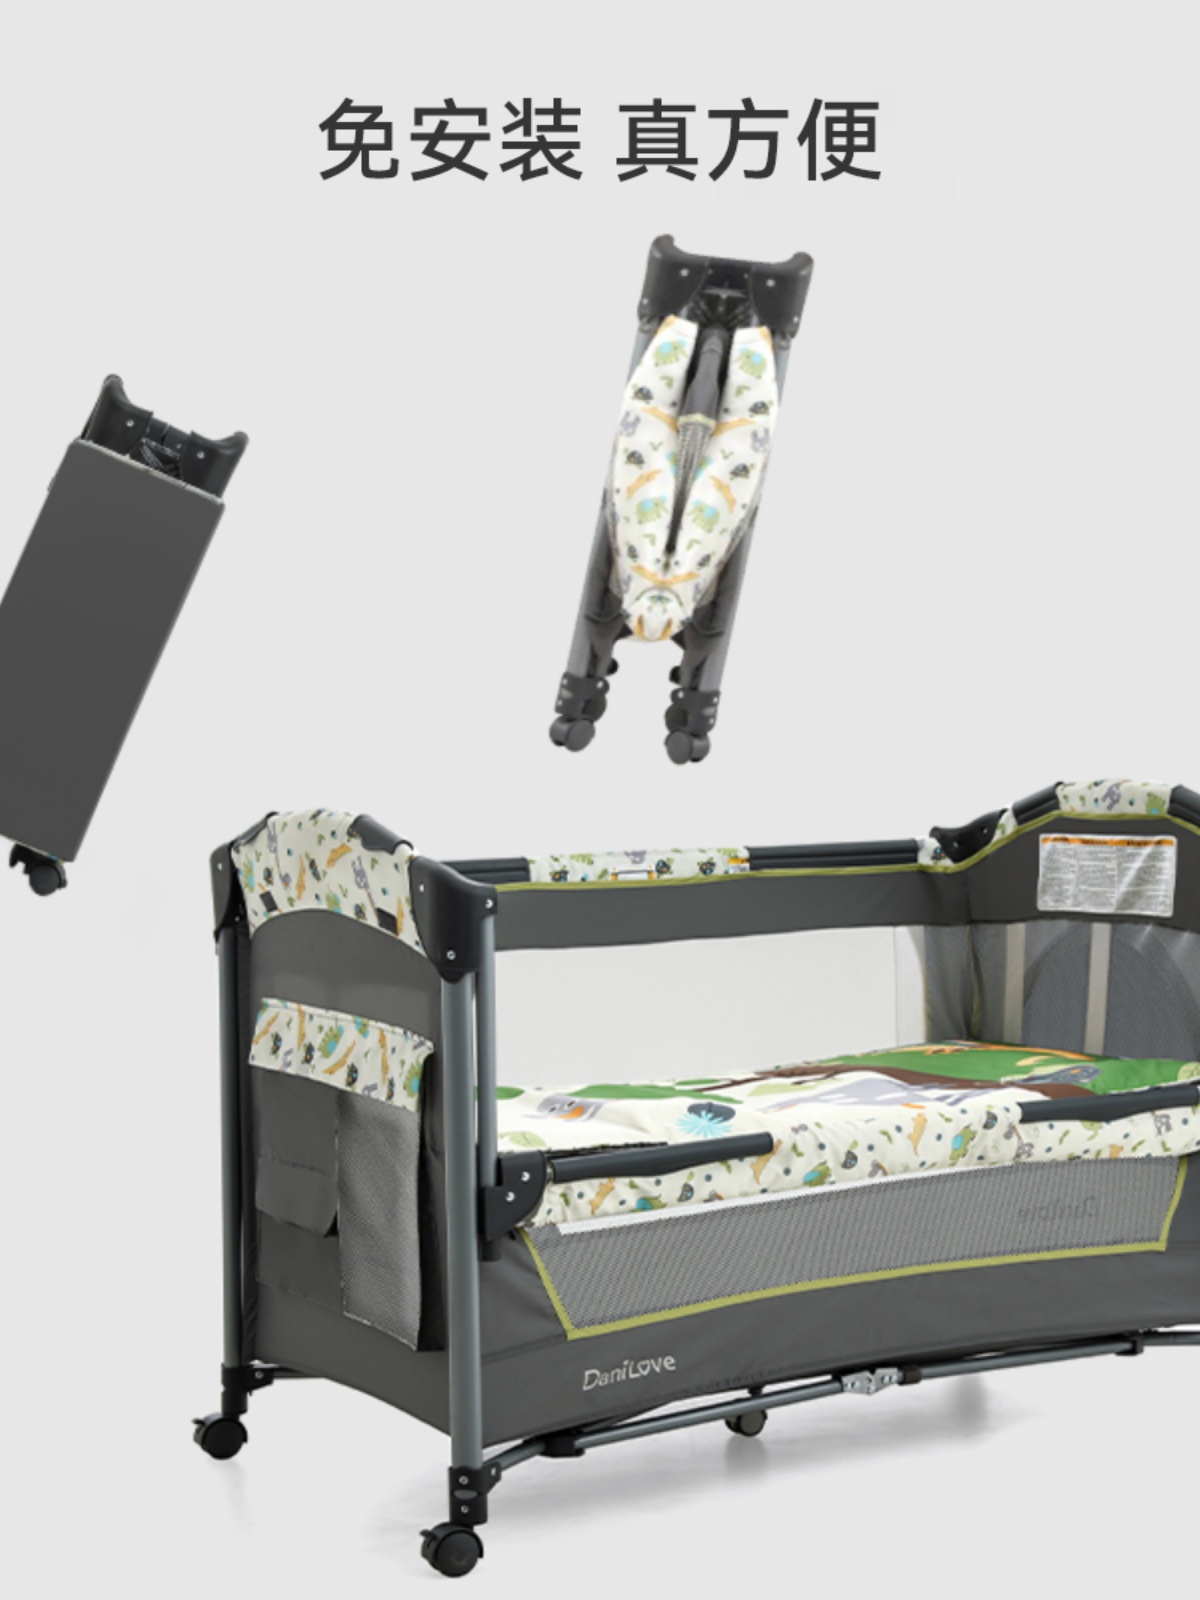 多功能嬰兒床 可摺疊移動 便攜搖籃床 嬰兒床新生兒拼接大床